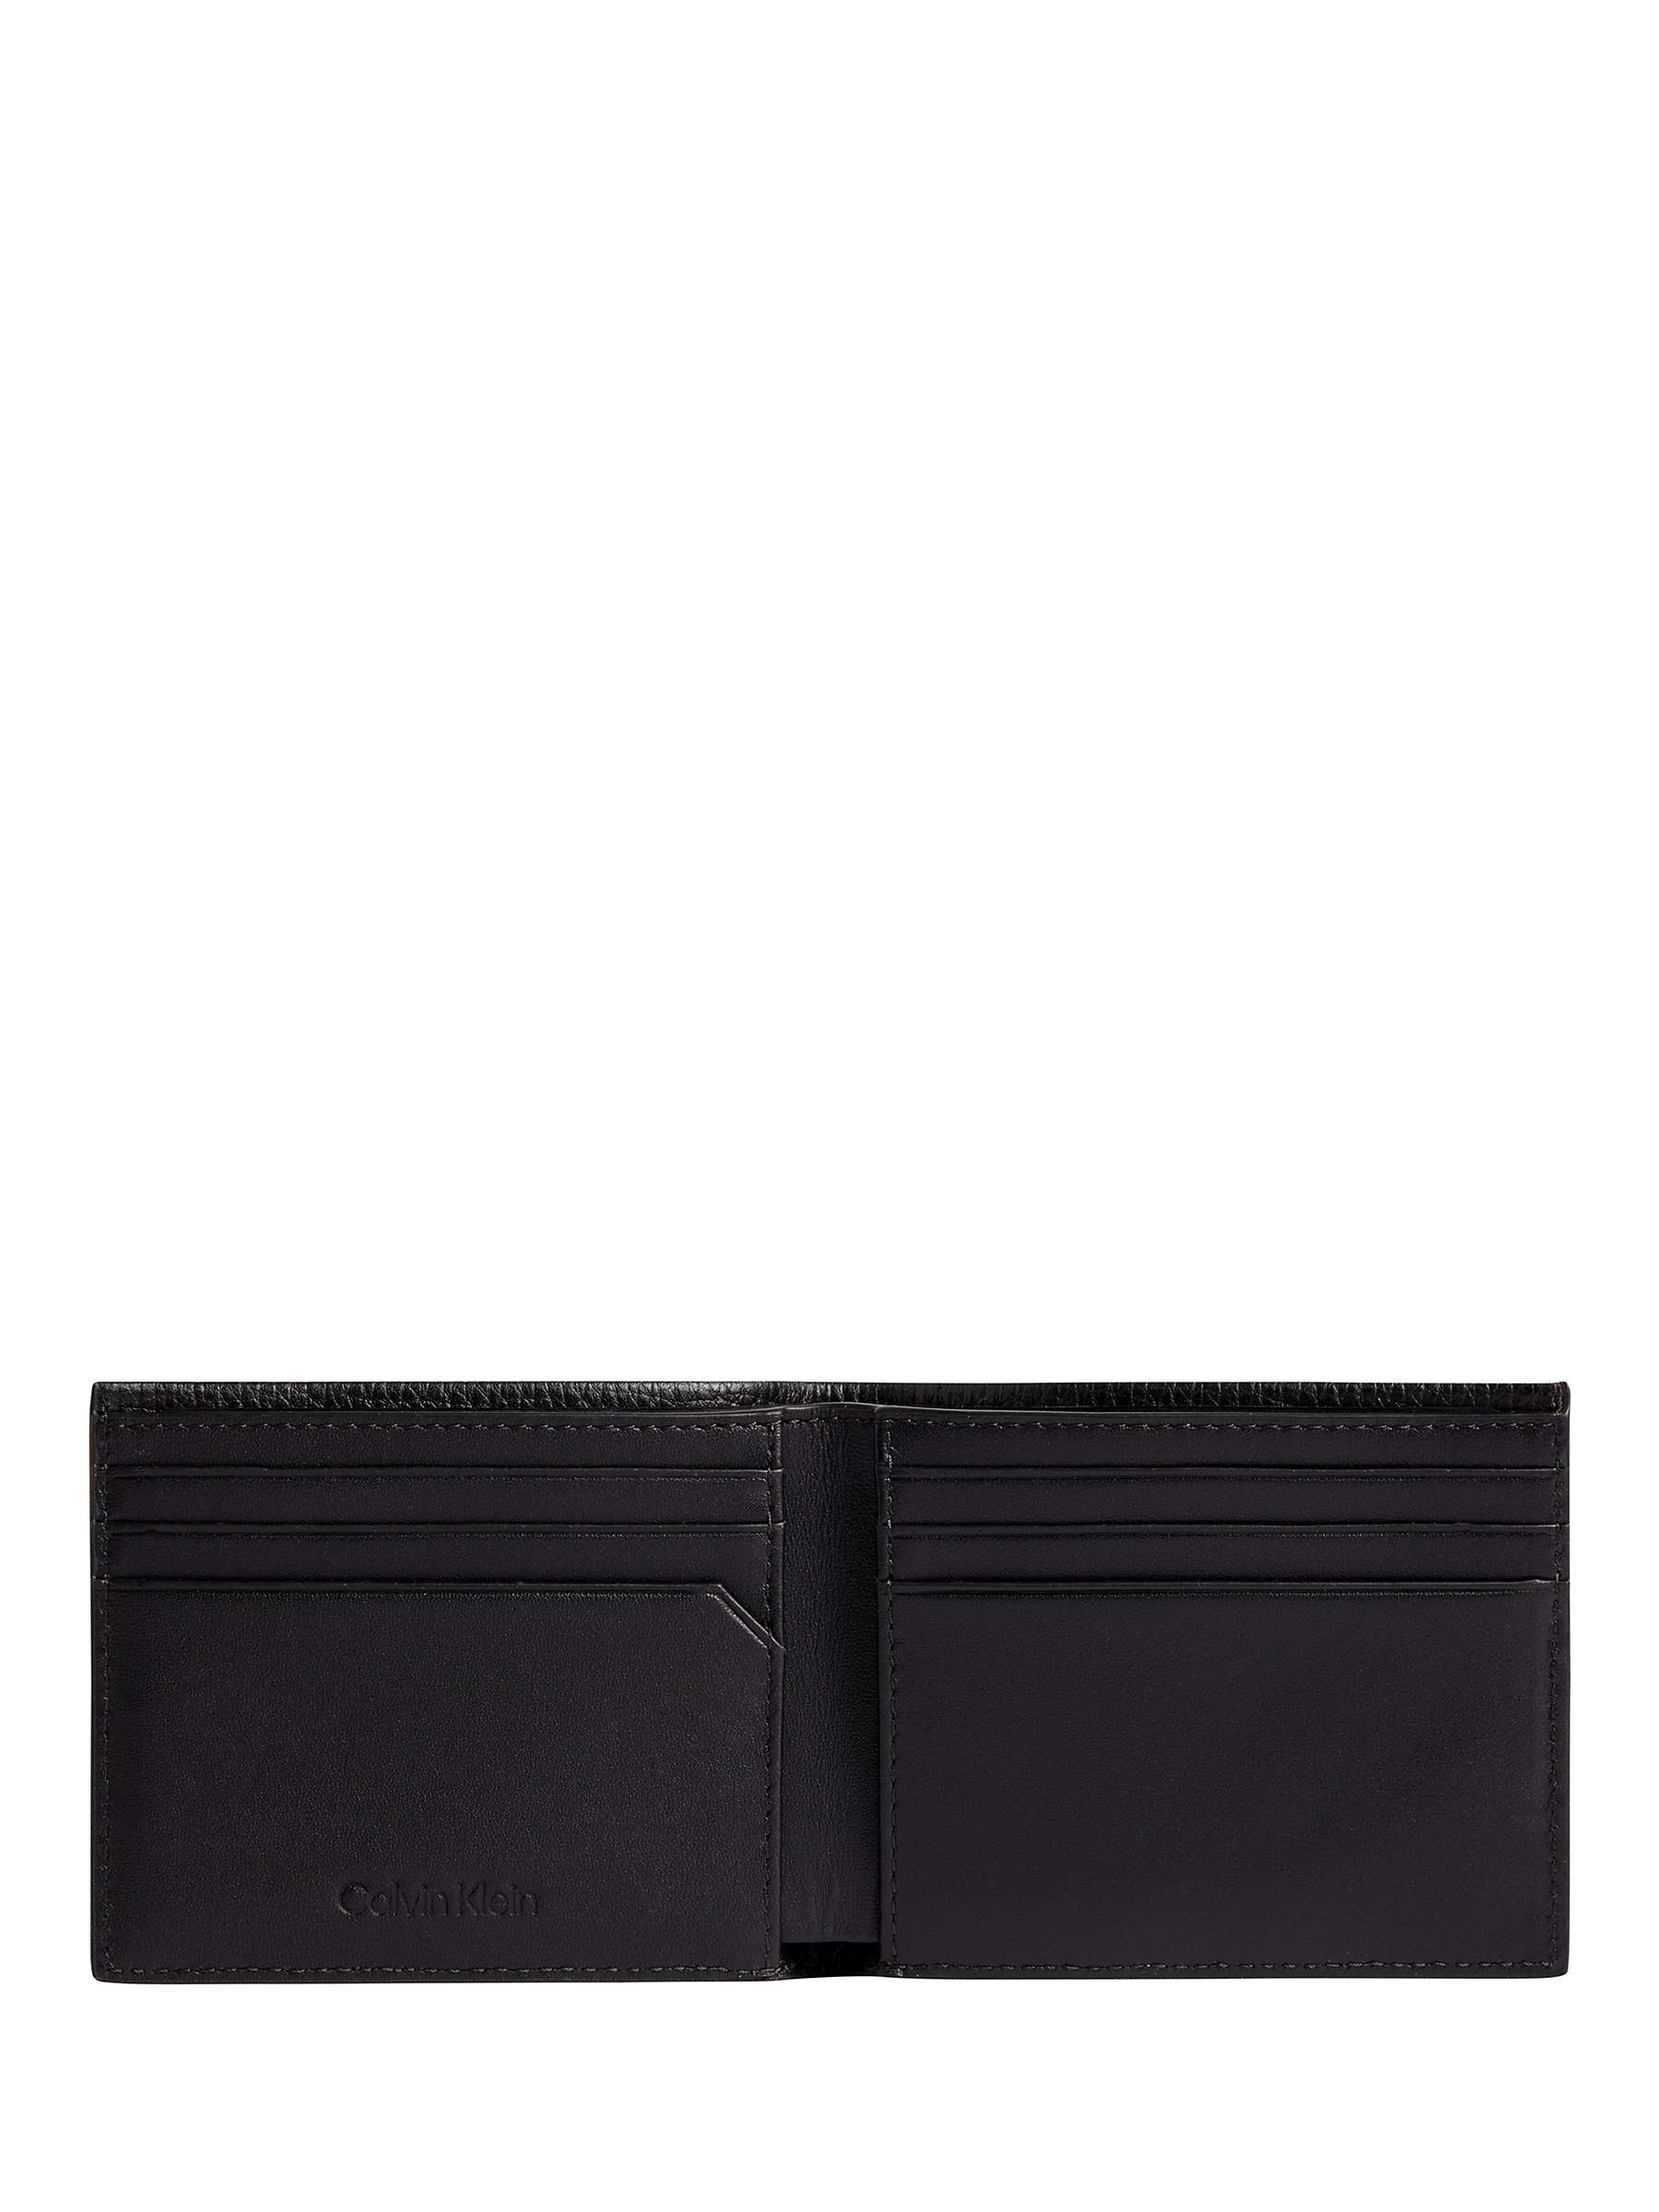 Calvin Klein Minimalism Bifold Leather Wallet, Black at John Lewis ...